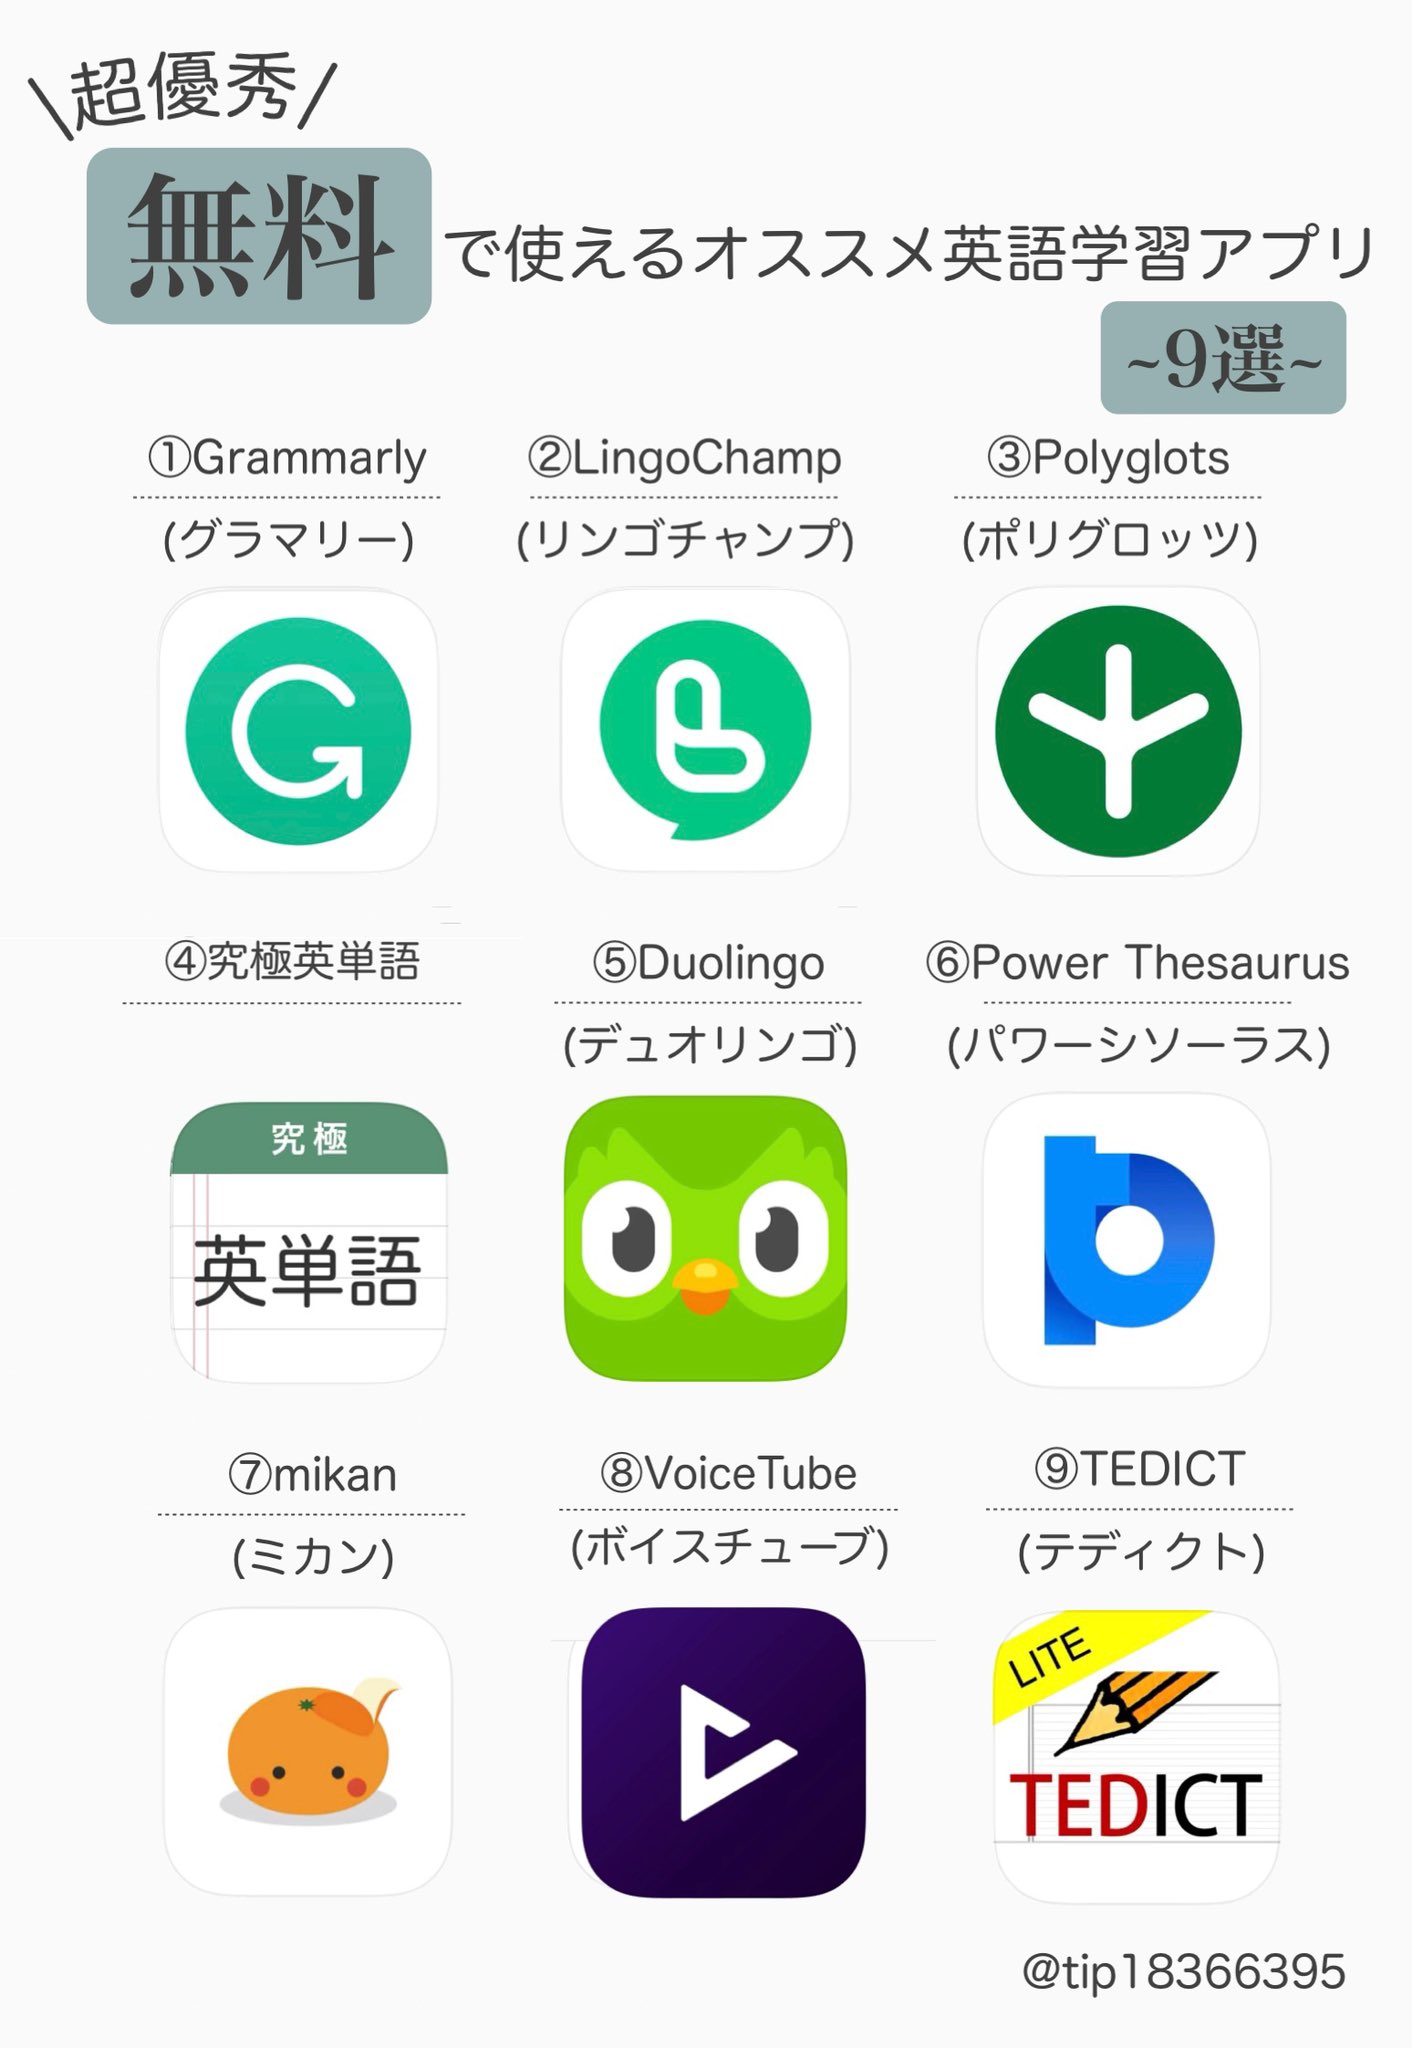 Tipsくん 英語学習 A Twitter 無料で使える オススメ英語学習アプリ9選 Grammarly Lingochamp Polyglots 究極英単語 Duolingo Power Thesaurus Mikan Voicetube Tedict 使ってみて本当に無料なの と 驚いたアプリをまとめました